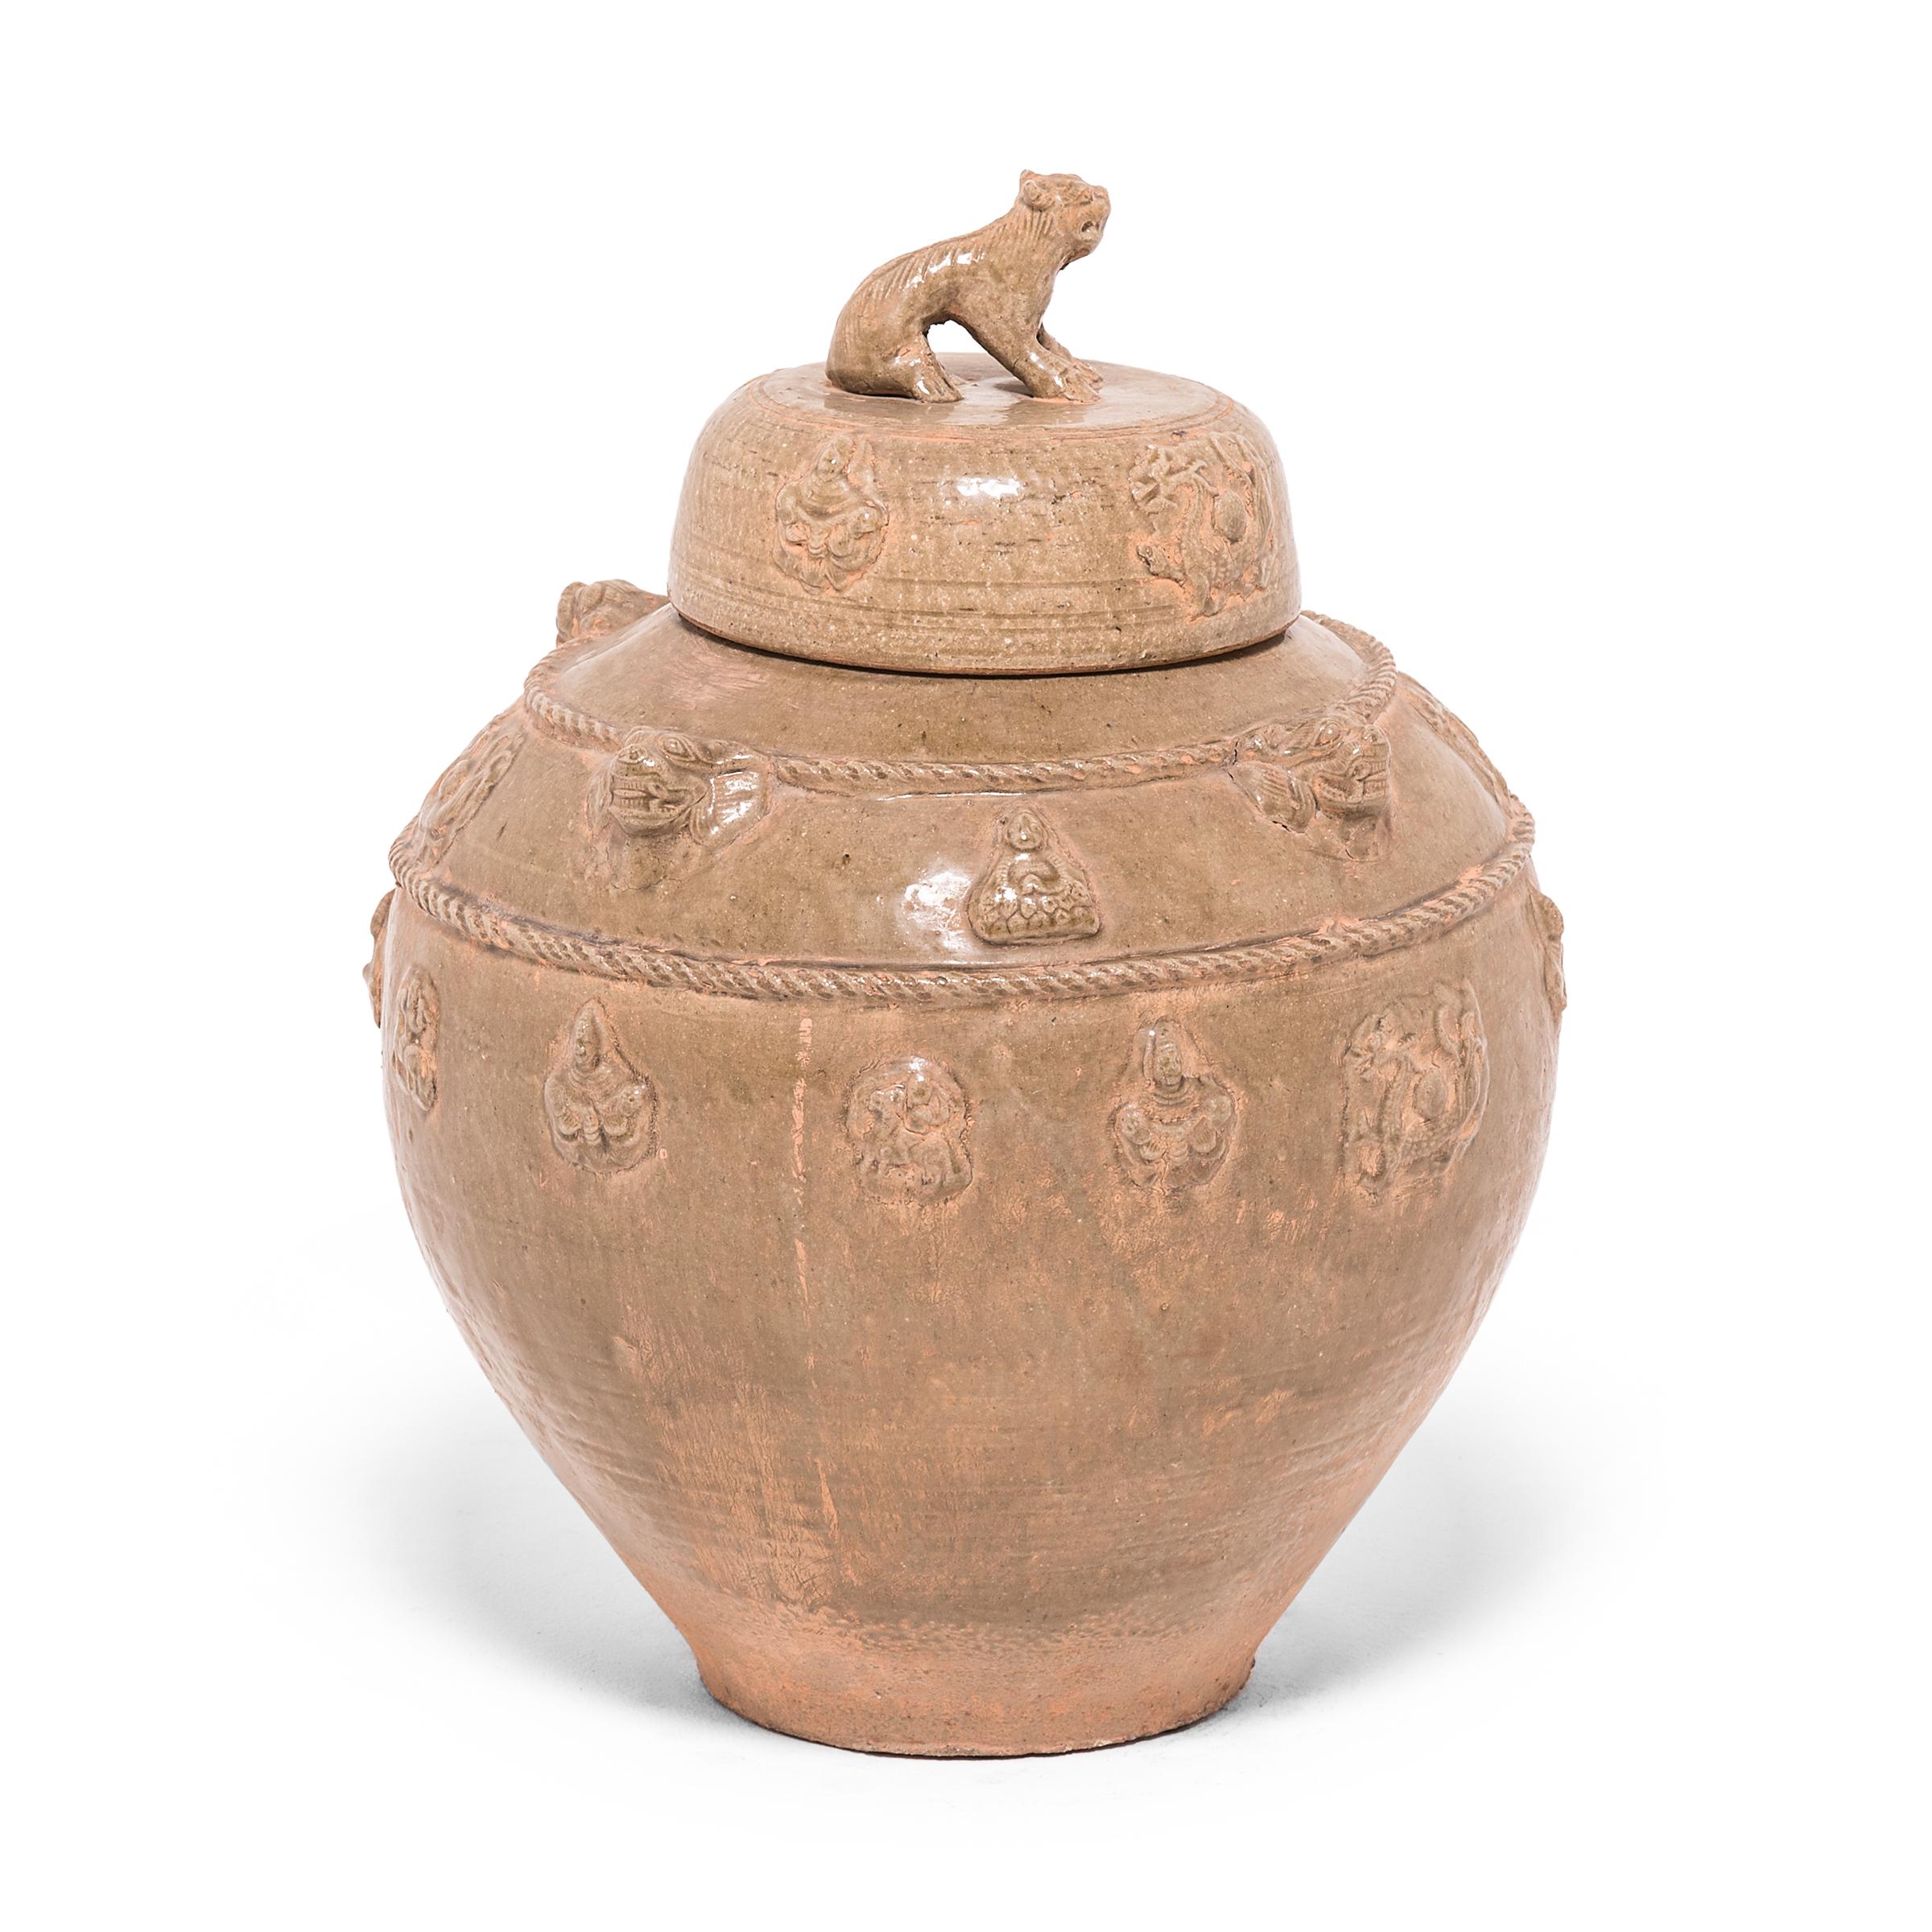 Dieses Keramikgefäß wurde in der Region Jiangxi in China nach dem Vorbild alter Tempelgefäße handgefertigt. Der Stil und die Glasur erinnern an Grabgefäße aus der Han-Dynastie, die zur Aufbewahrung von Wein für den Übergang ins Jenseits bestimmt